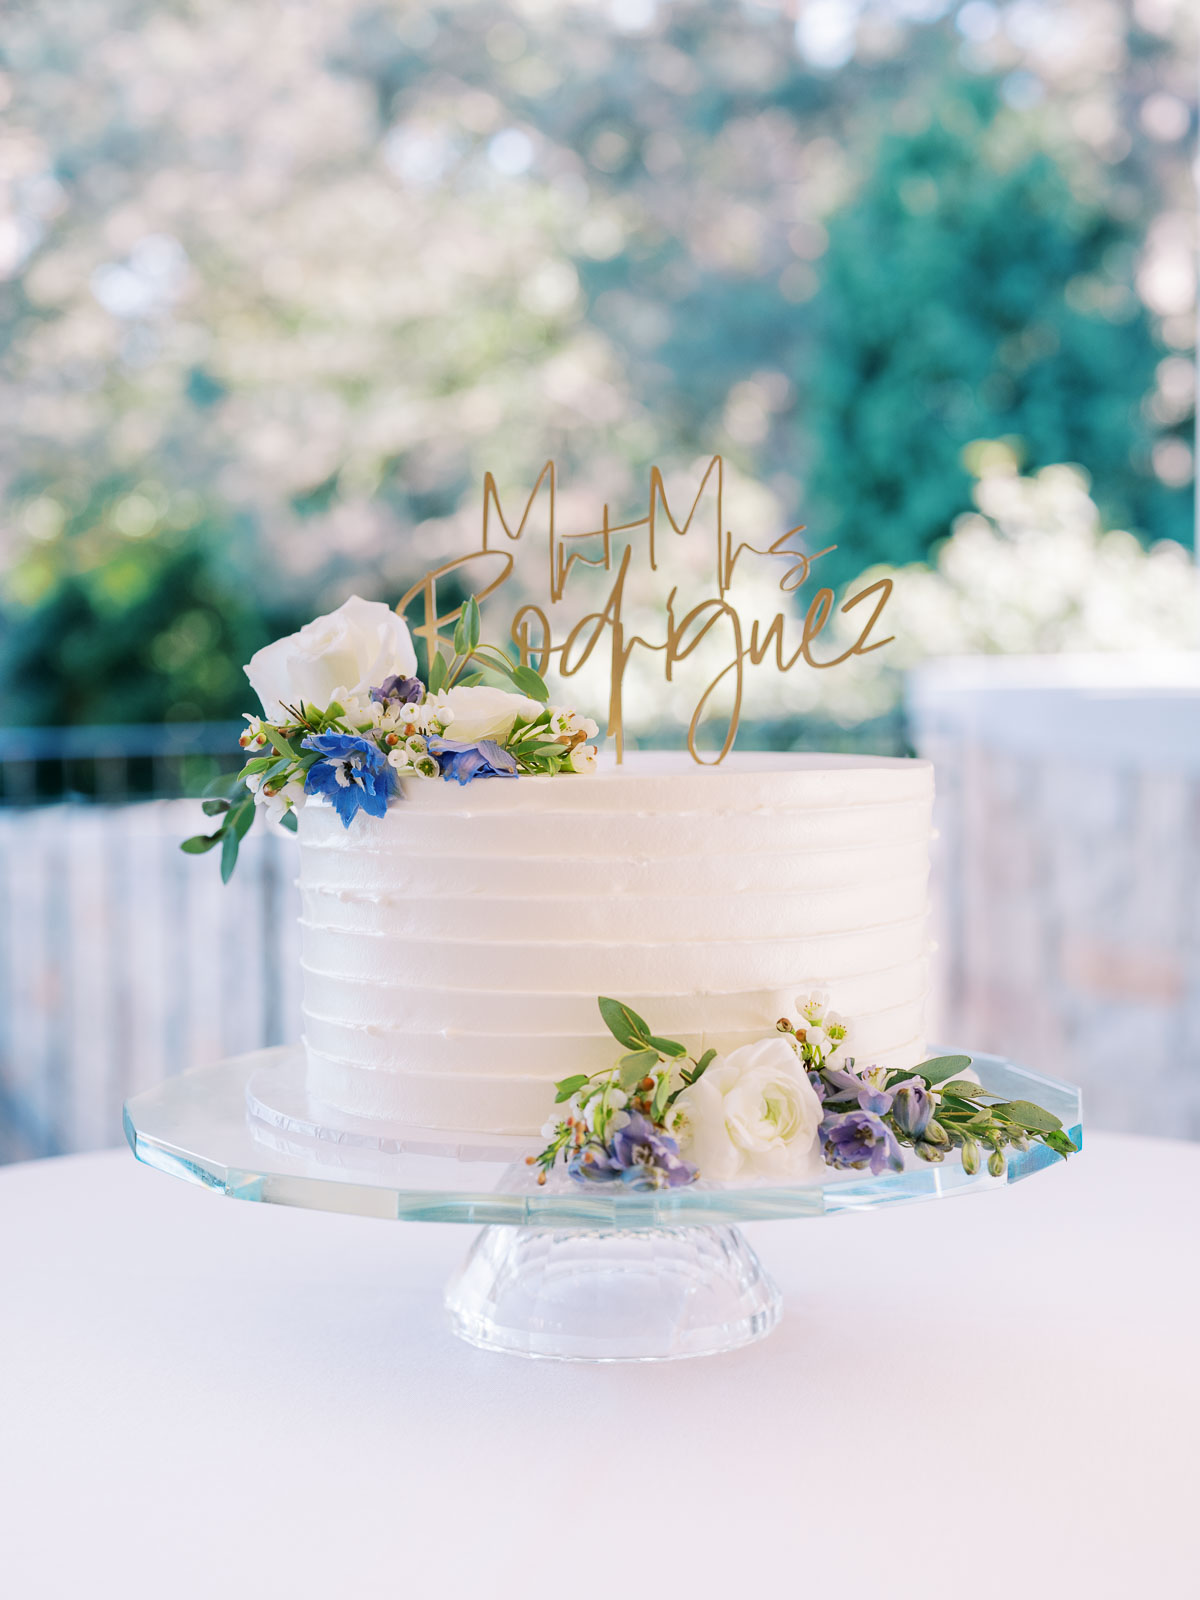 Luna Bakery Cafe wedding cake